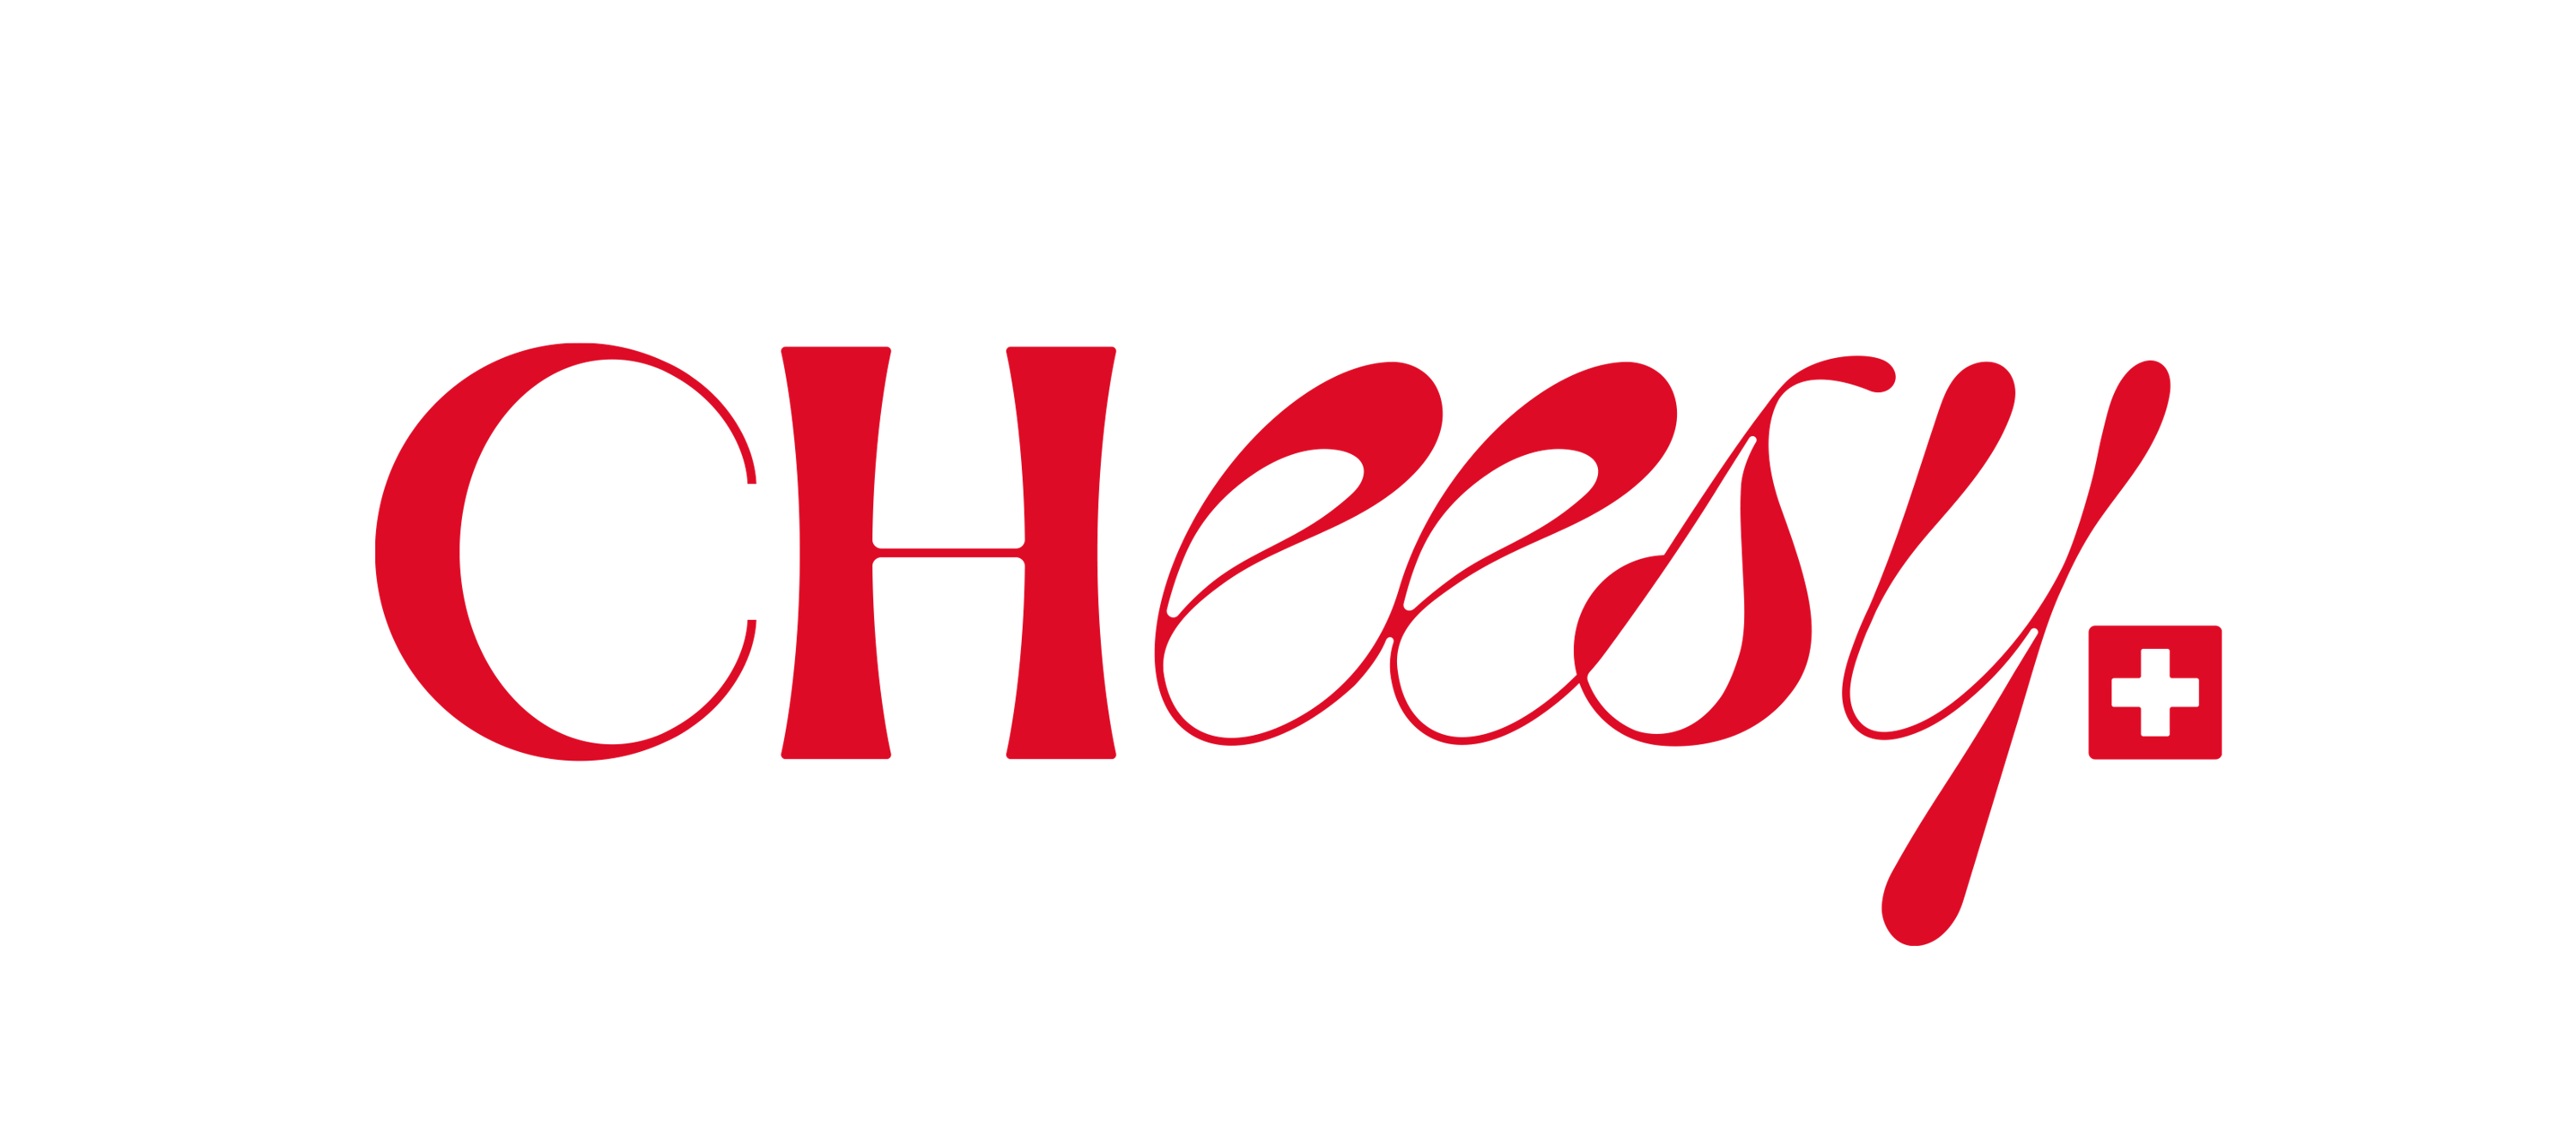 CHeesy, een pop-up restaurant waar alles draait om Zwitserse kaaskroketten, opent dit najaar in Brussel!